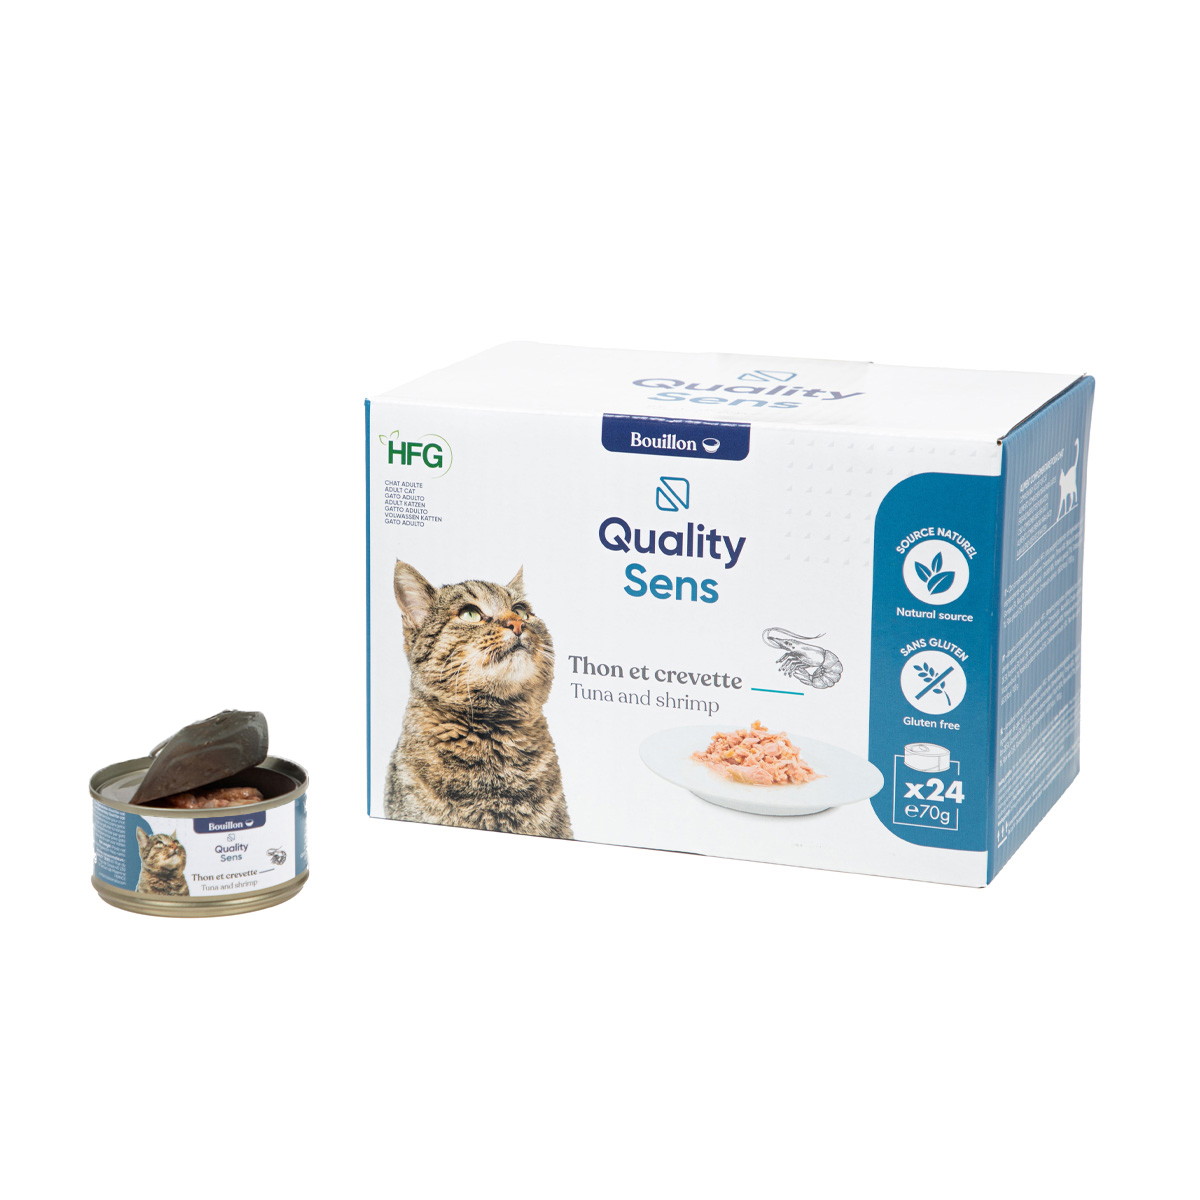 QUALITY SENS HFG Comida húmeda 100% Natural 70 g para Gatos y Gatitos, 6 recetas para escoger